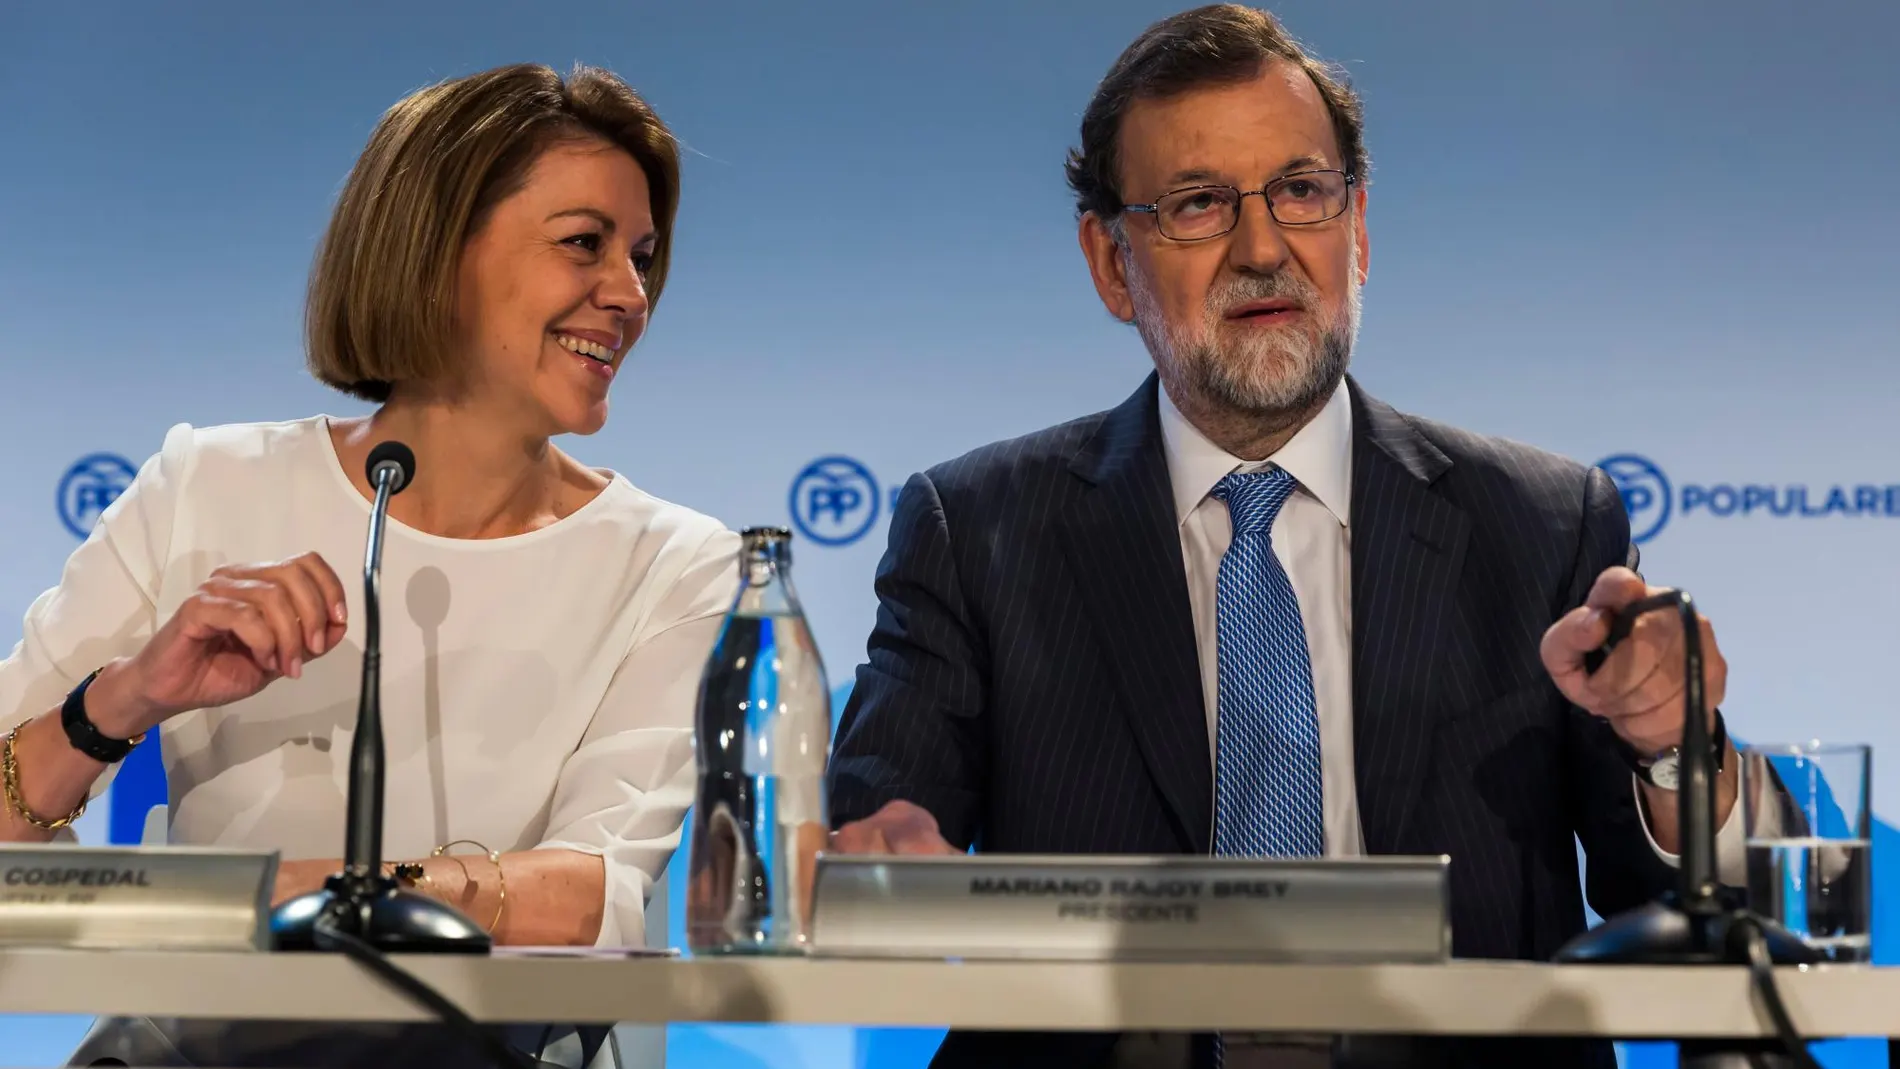 El Parlament solicita la comparecencia de Mariano Rajoy, Soraya Sáenz de Santamaría y María Dolores de Cospedal en la comisión de investigación del 155